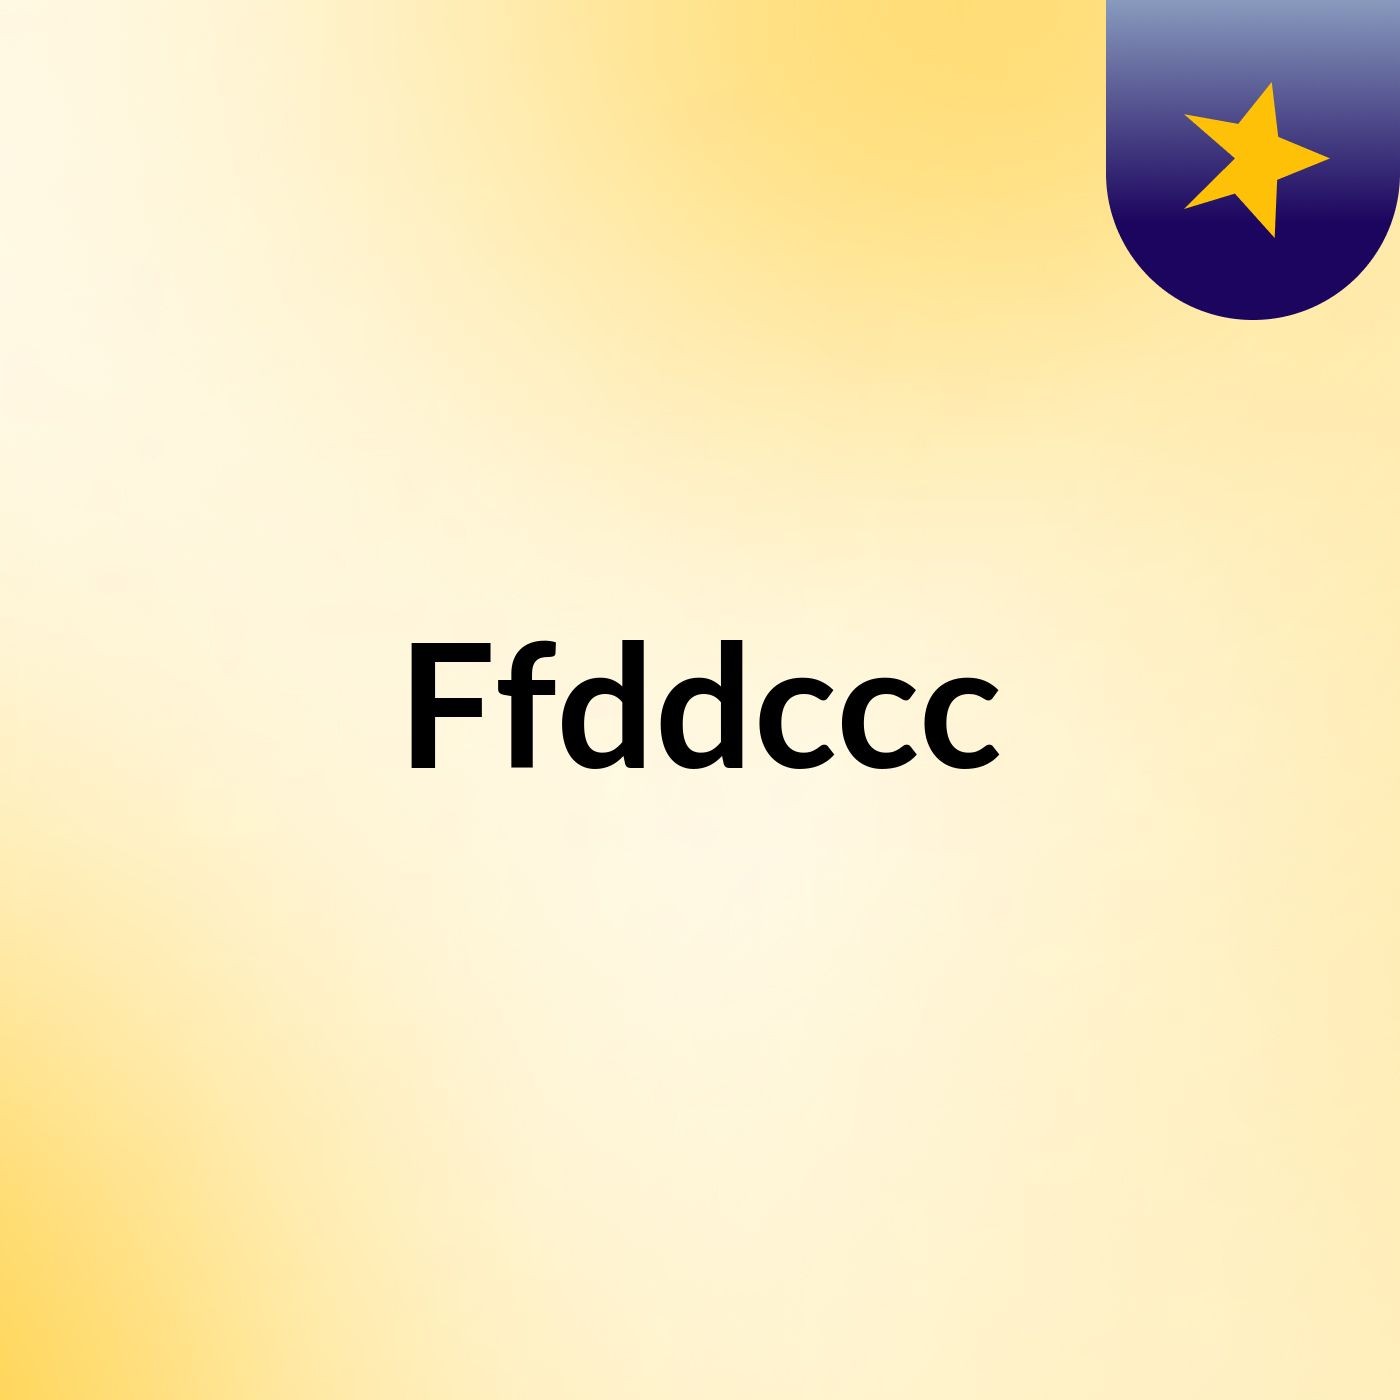 Ffddccc